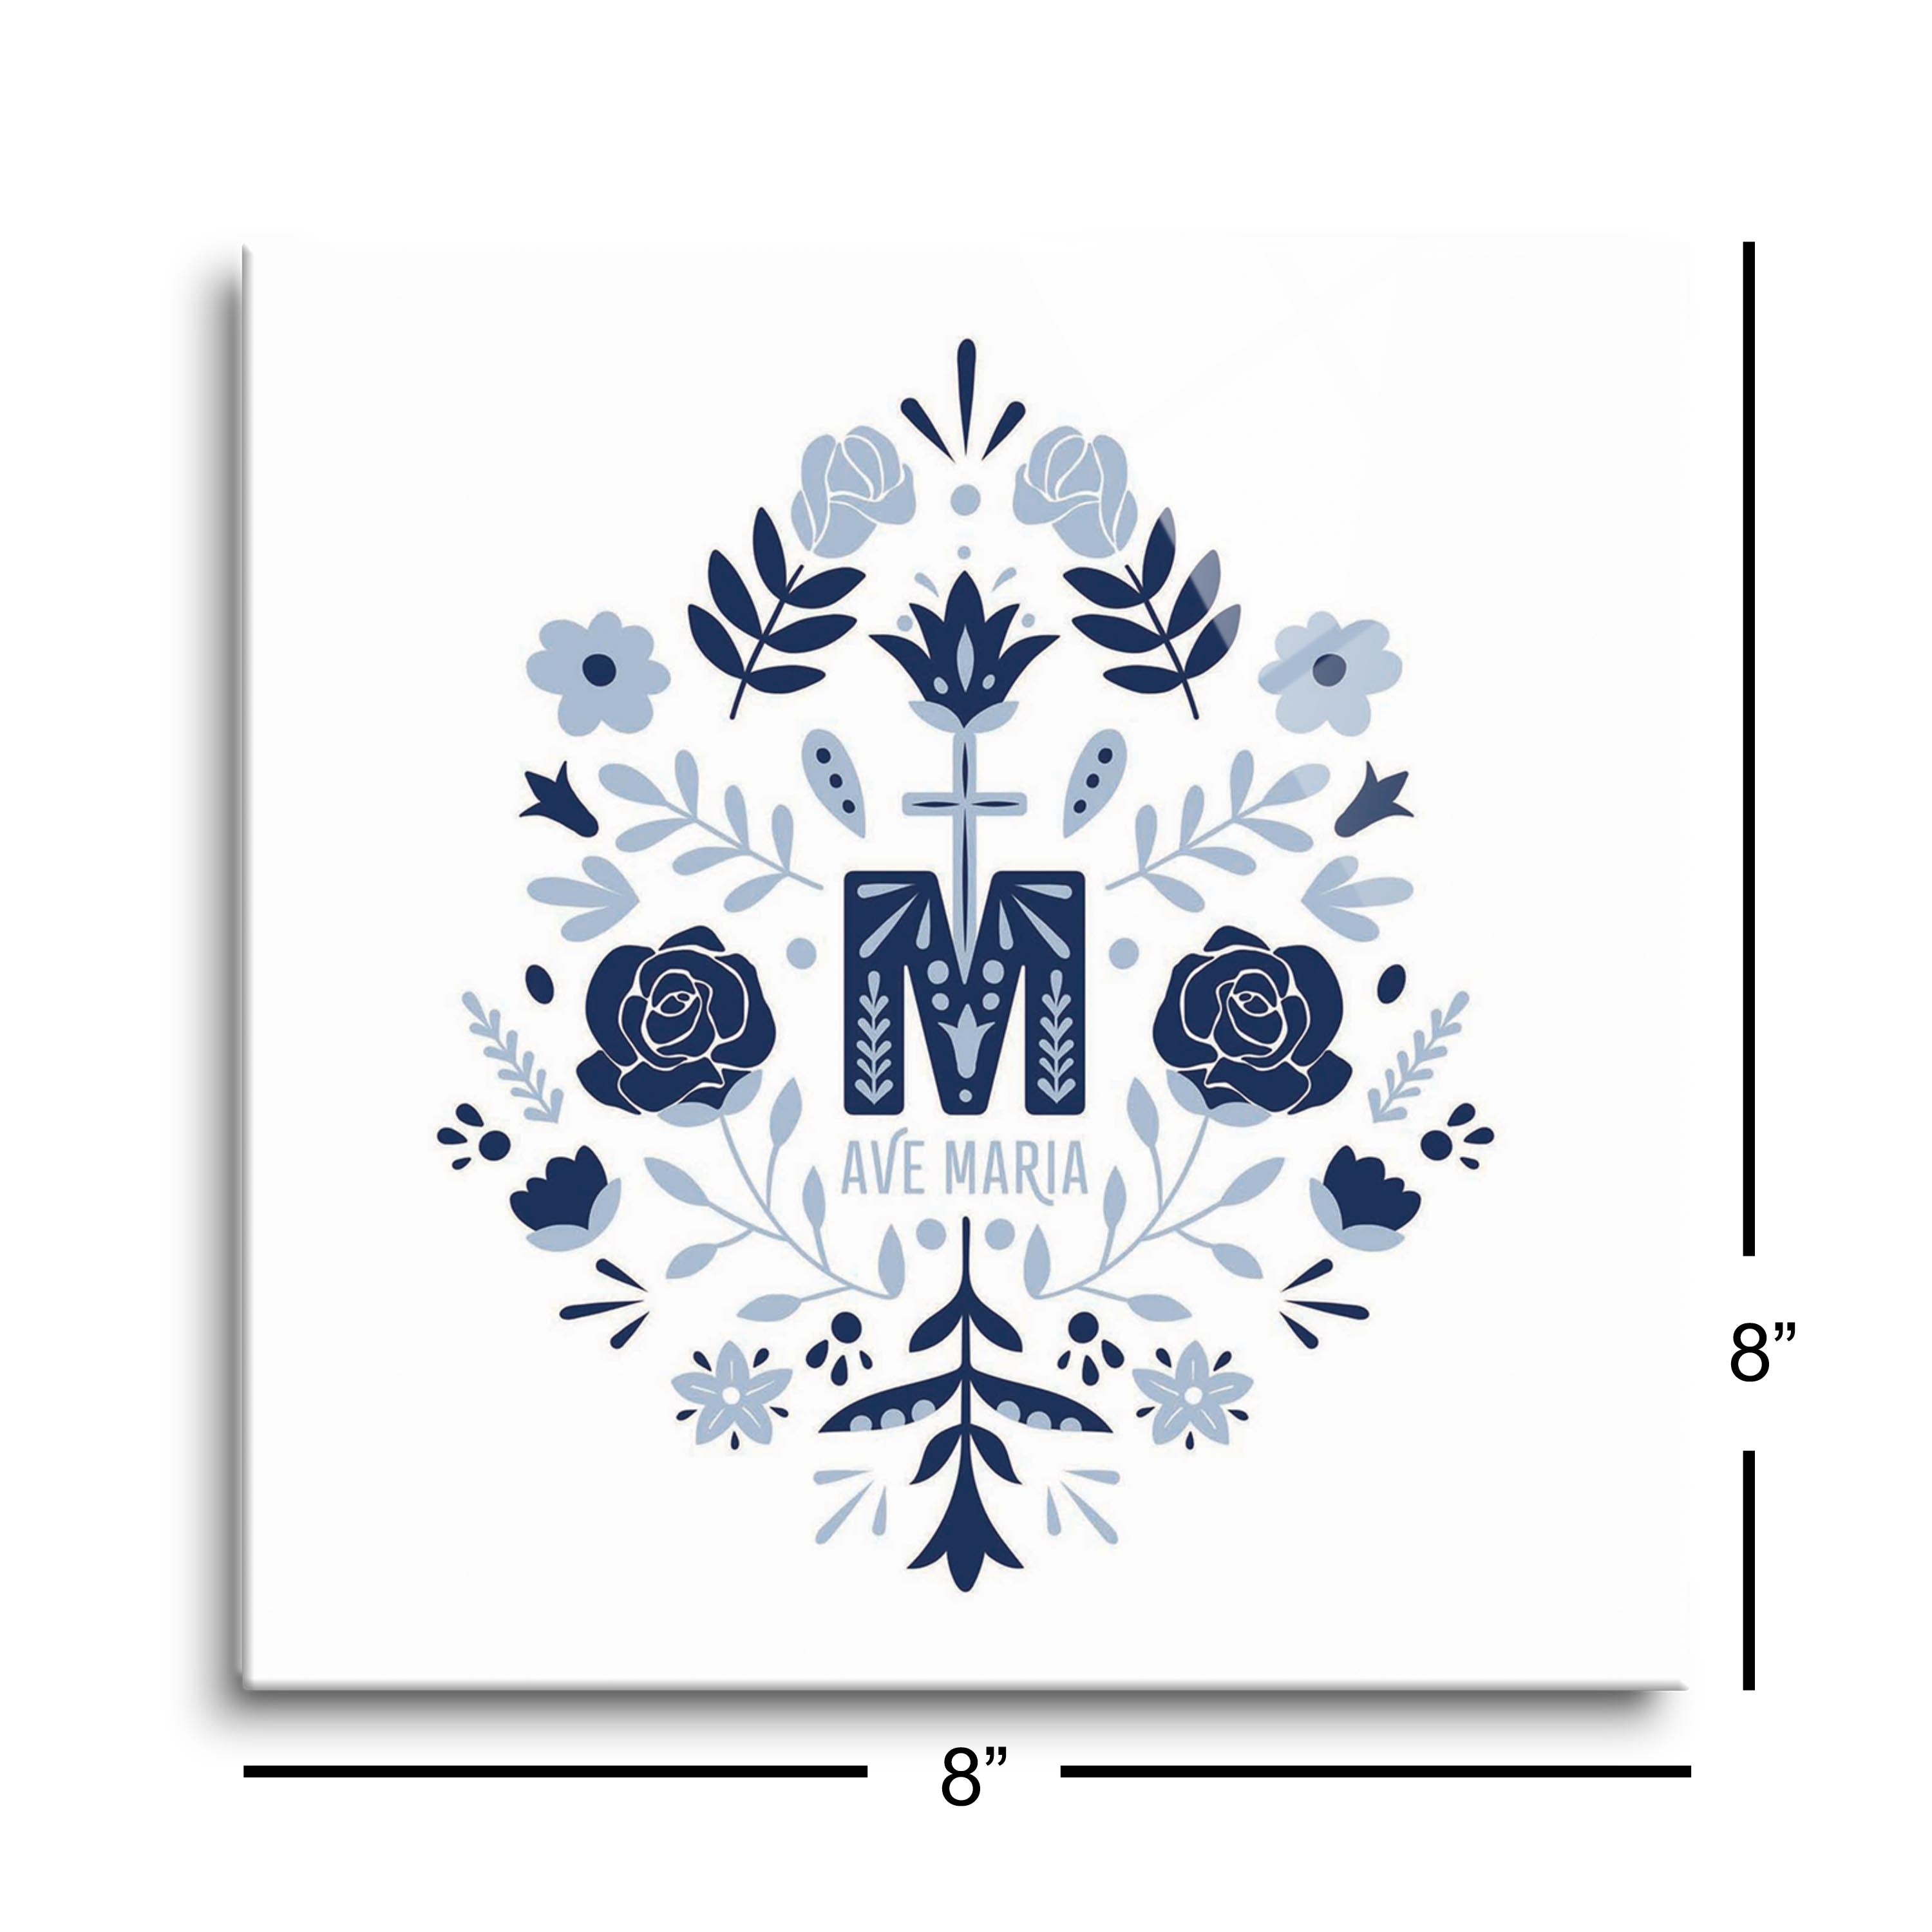 Ave Maria Monogram Square Glass Plaque-8"x8"